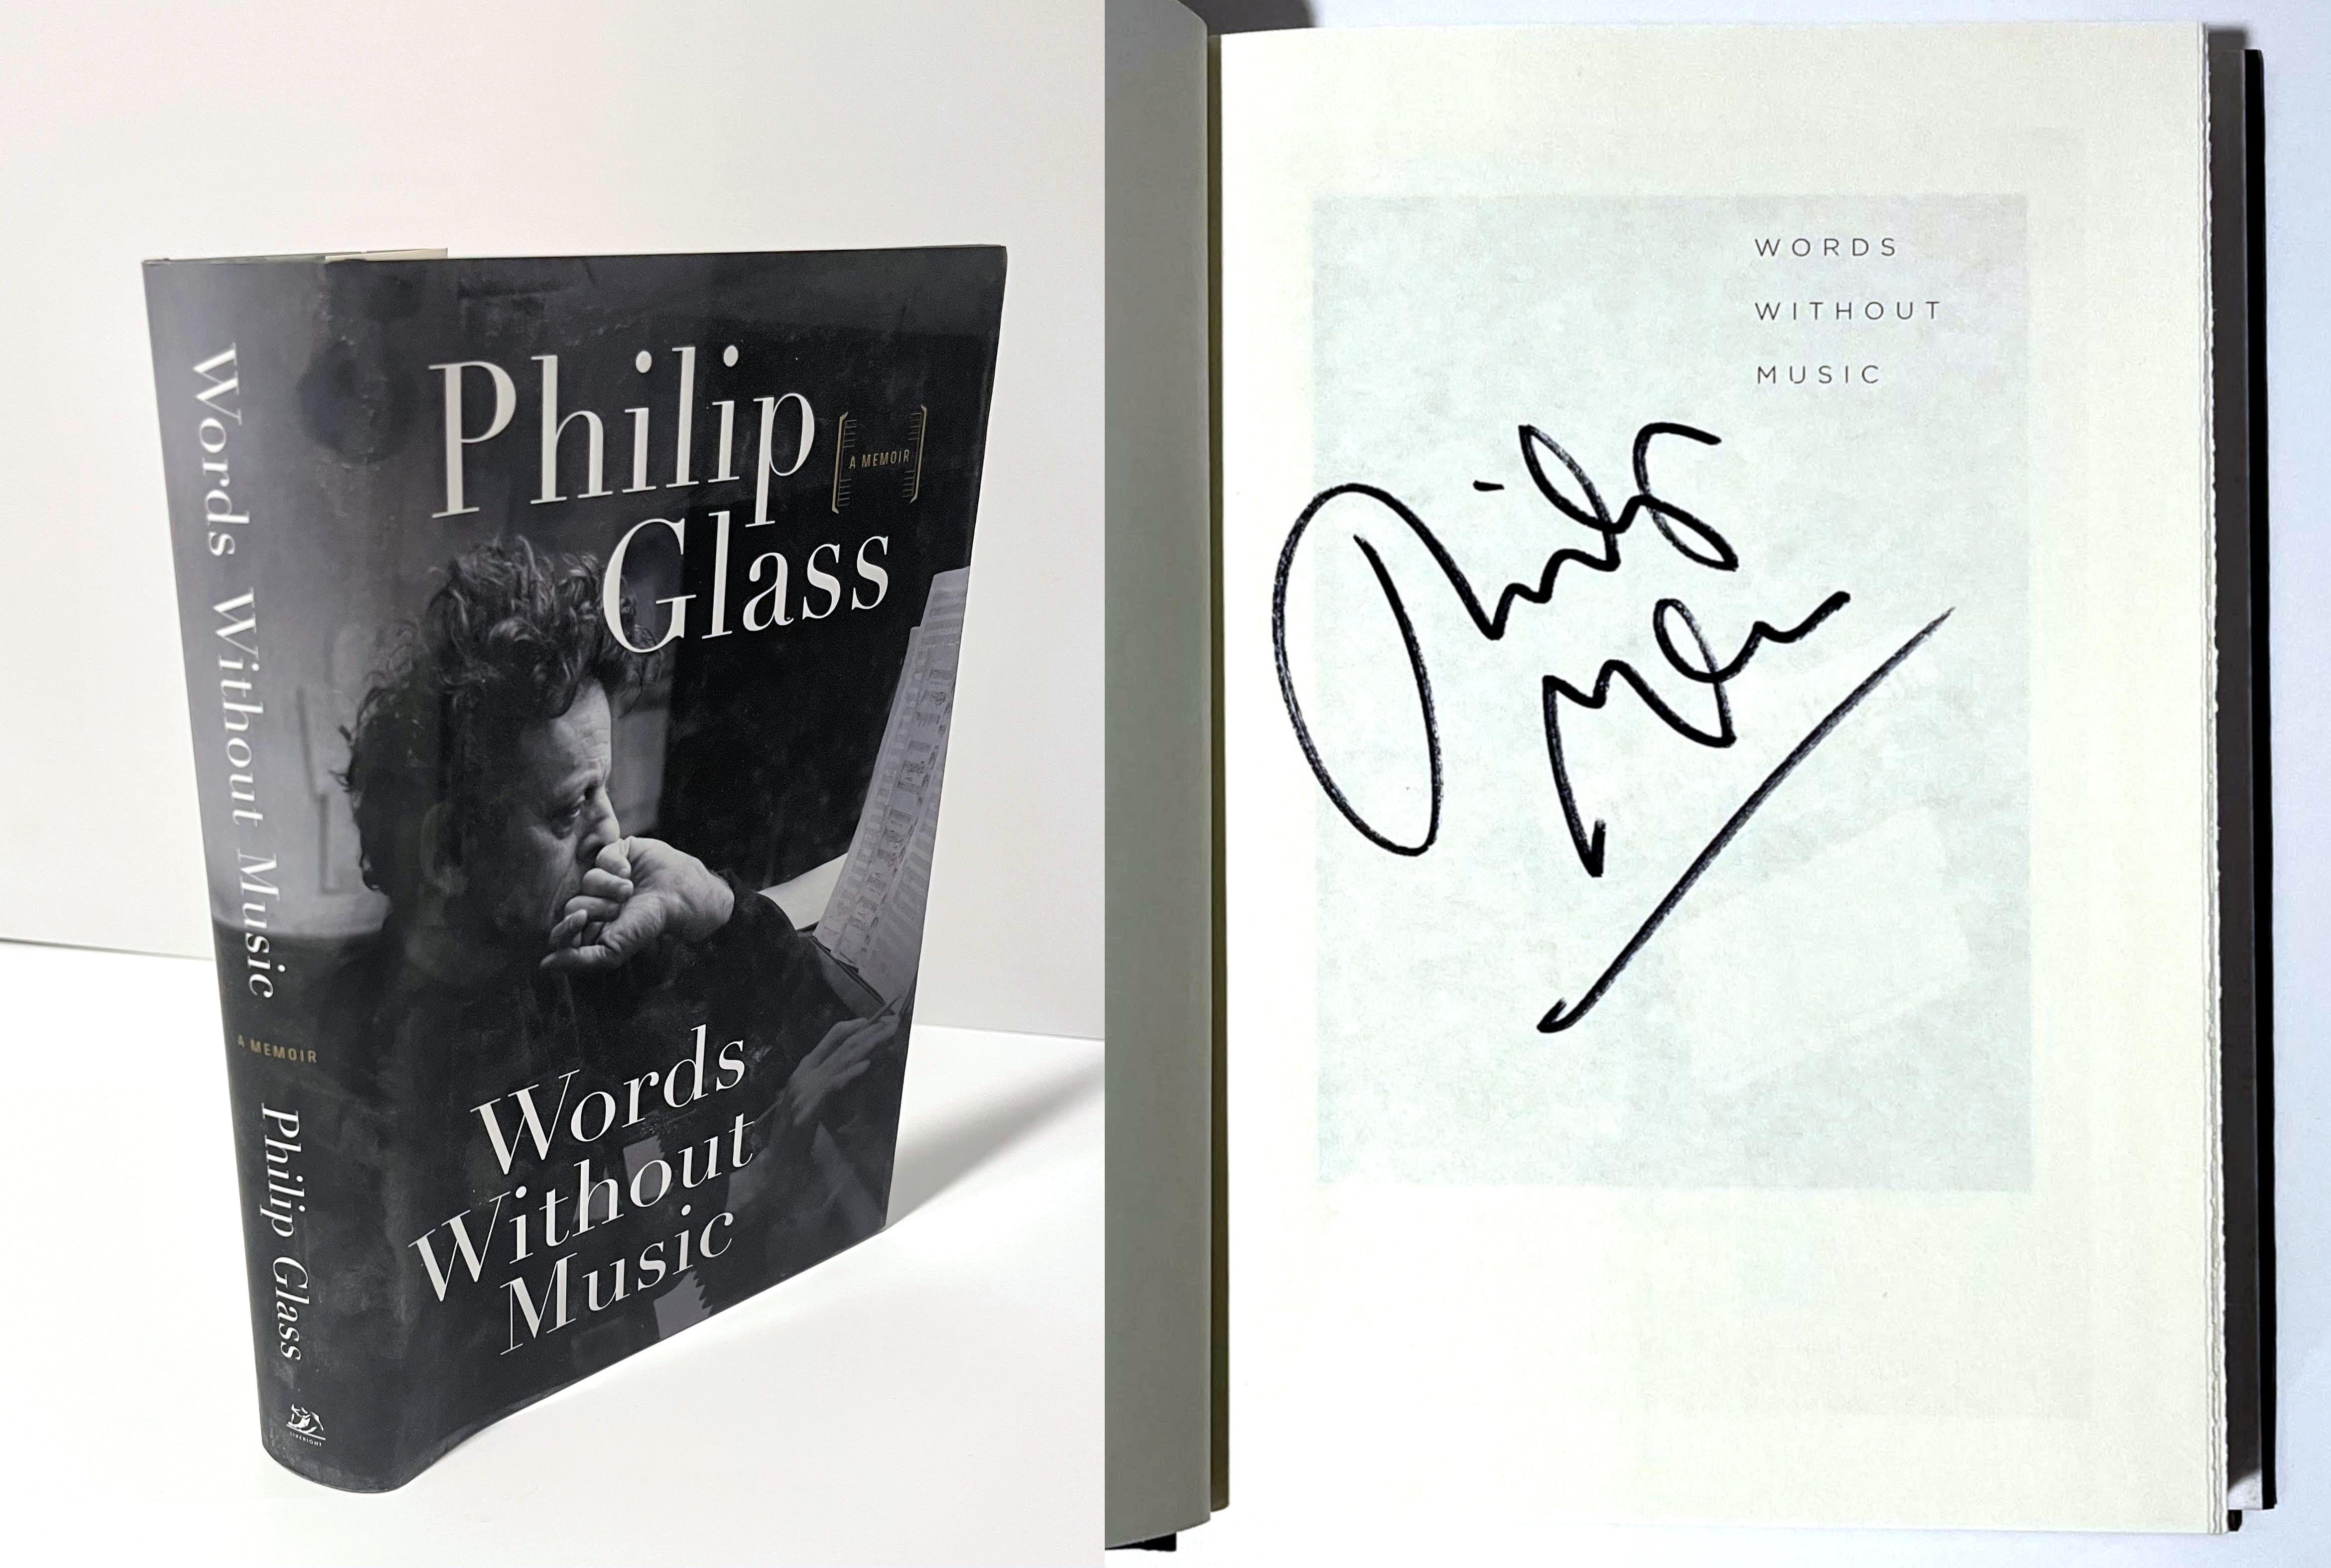 Philip Glass Words Without Music (signé à la main par Philip Glass), 2015.
Monographie reliée avec jaquette (signée par Philip Glass)
Signé à la main par Philip Glass sur la moitié de la page de titre.
9 1/2 × 6 1/2 × 1 1/4 pouces
Signé à la main